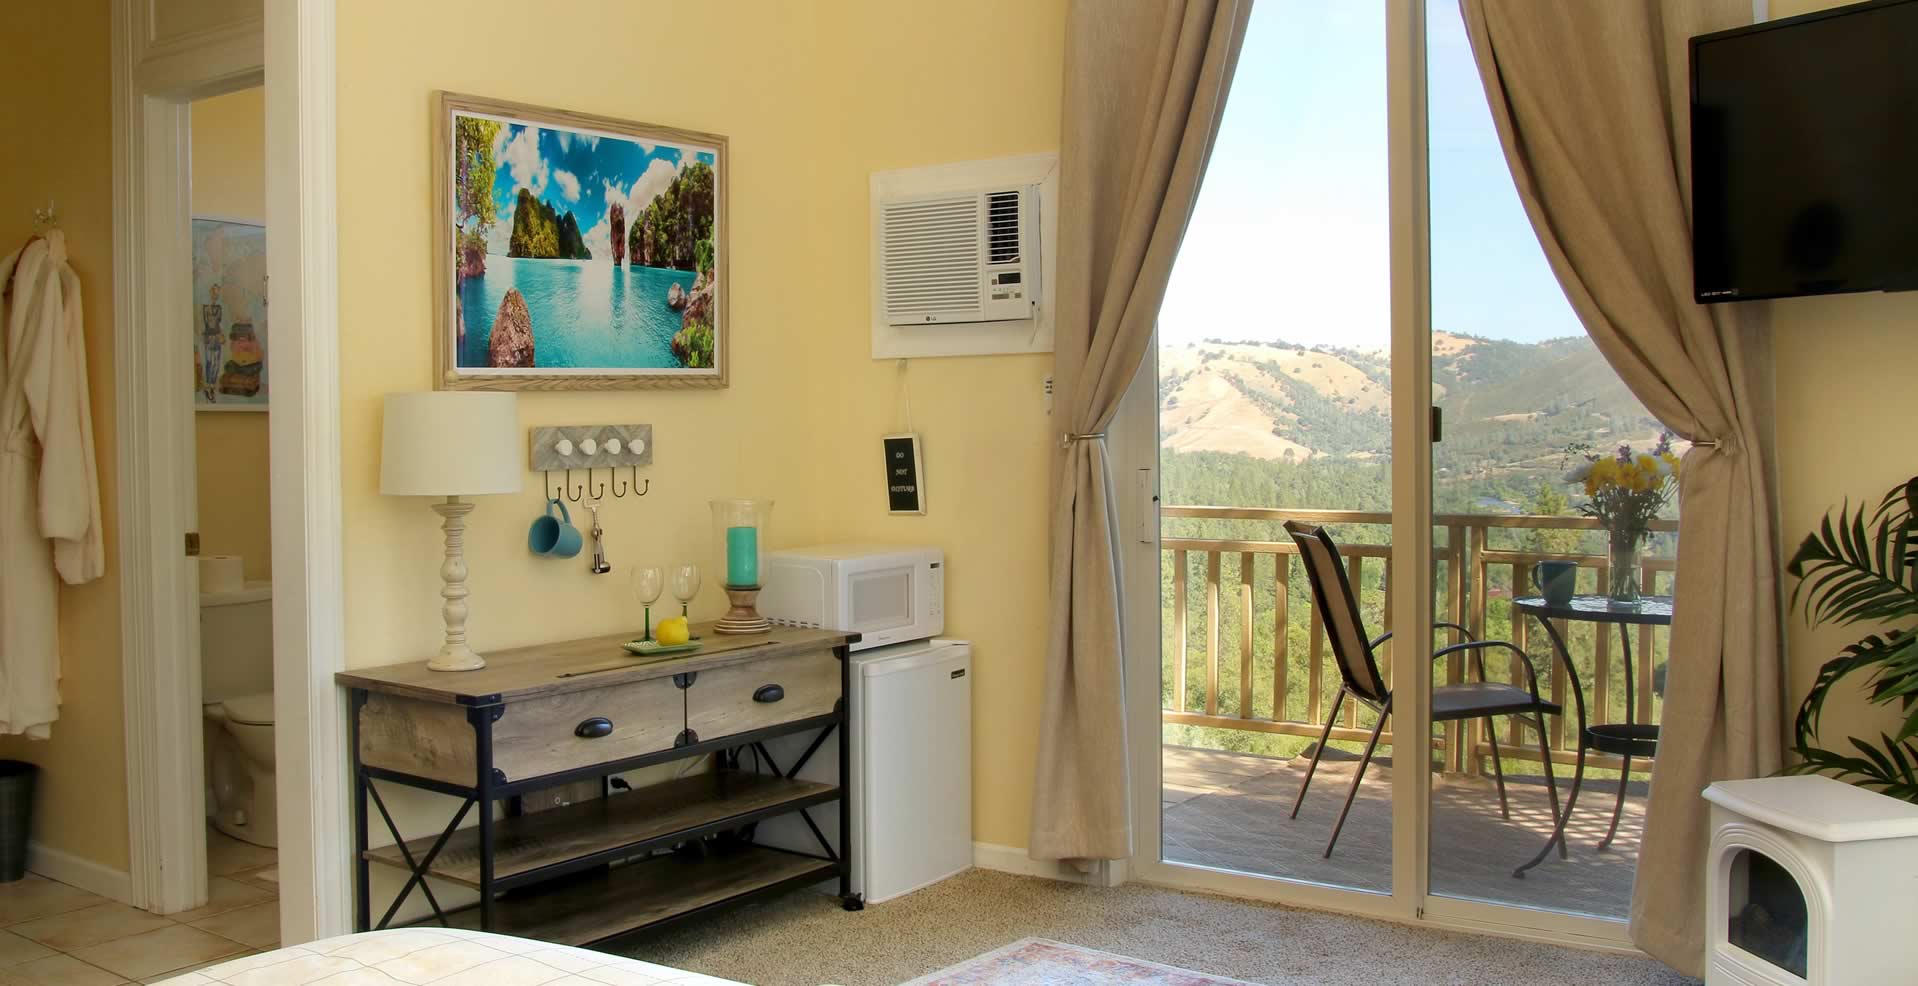 Bella Vista - Arbor Suite - room with a view